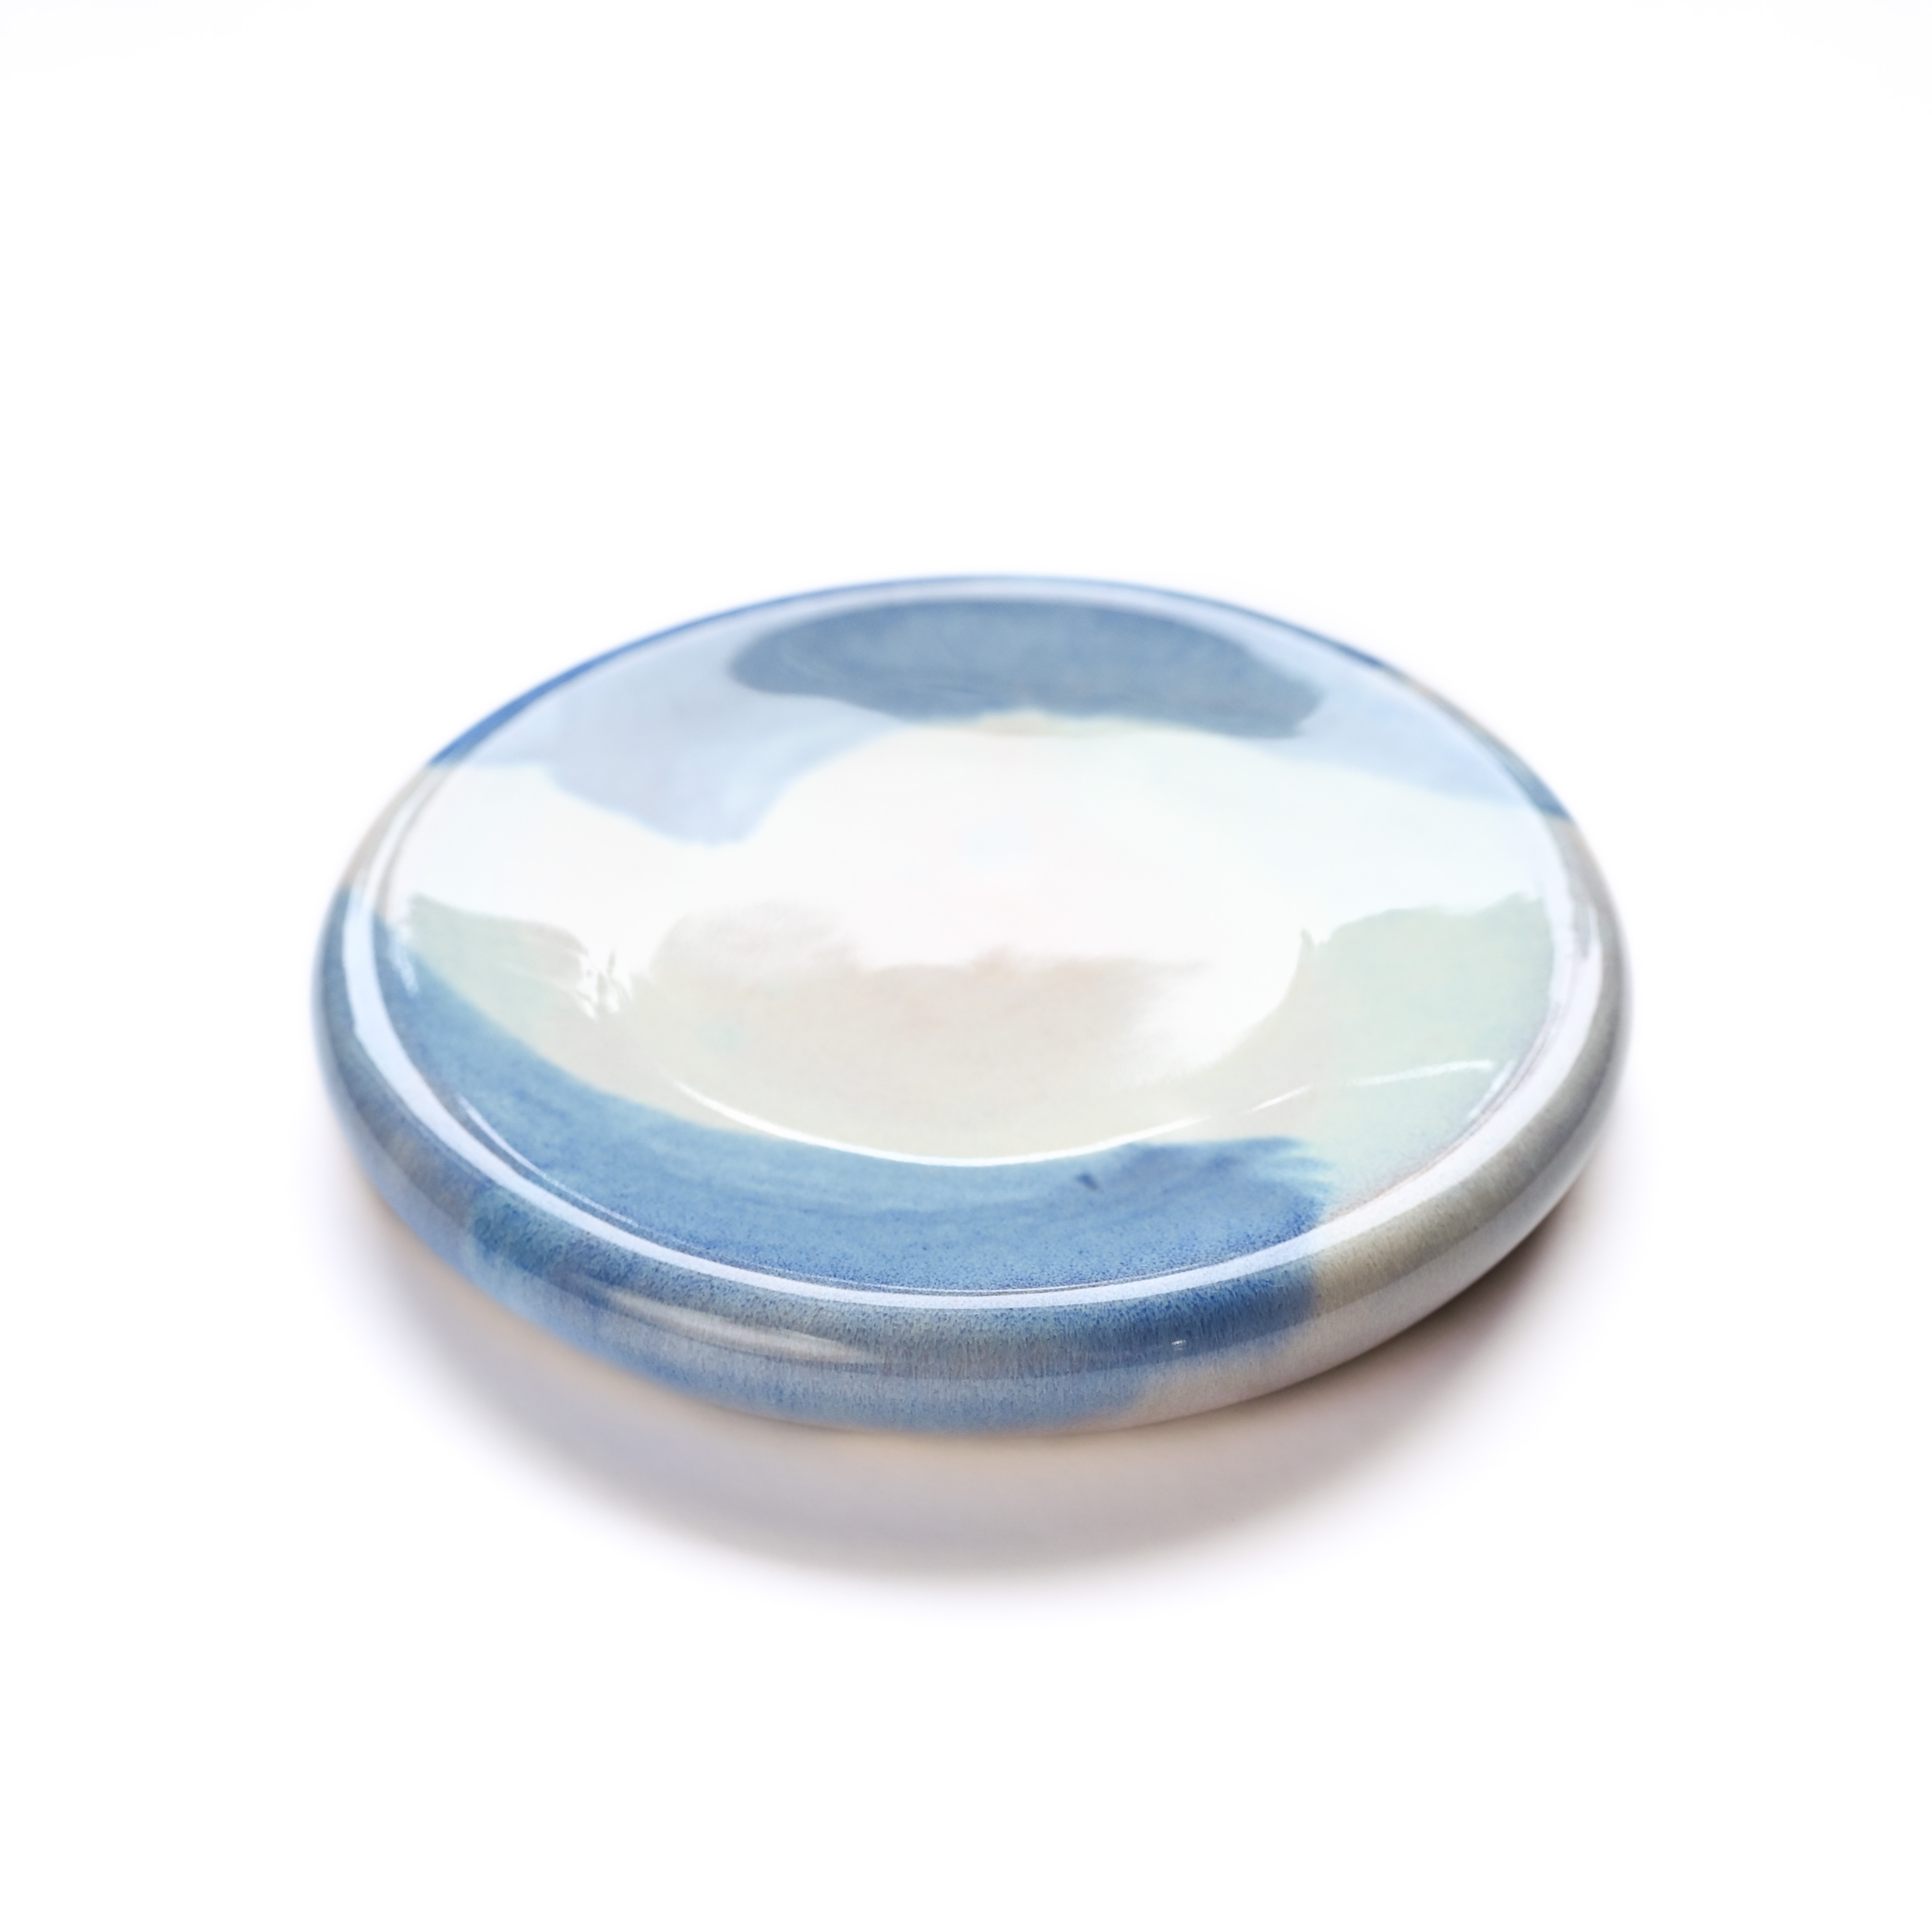 картинка Десертная тарелка Pottery Atelier голубая 15 см - DishWishes.Ru